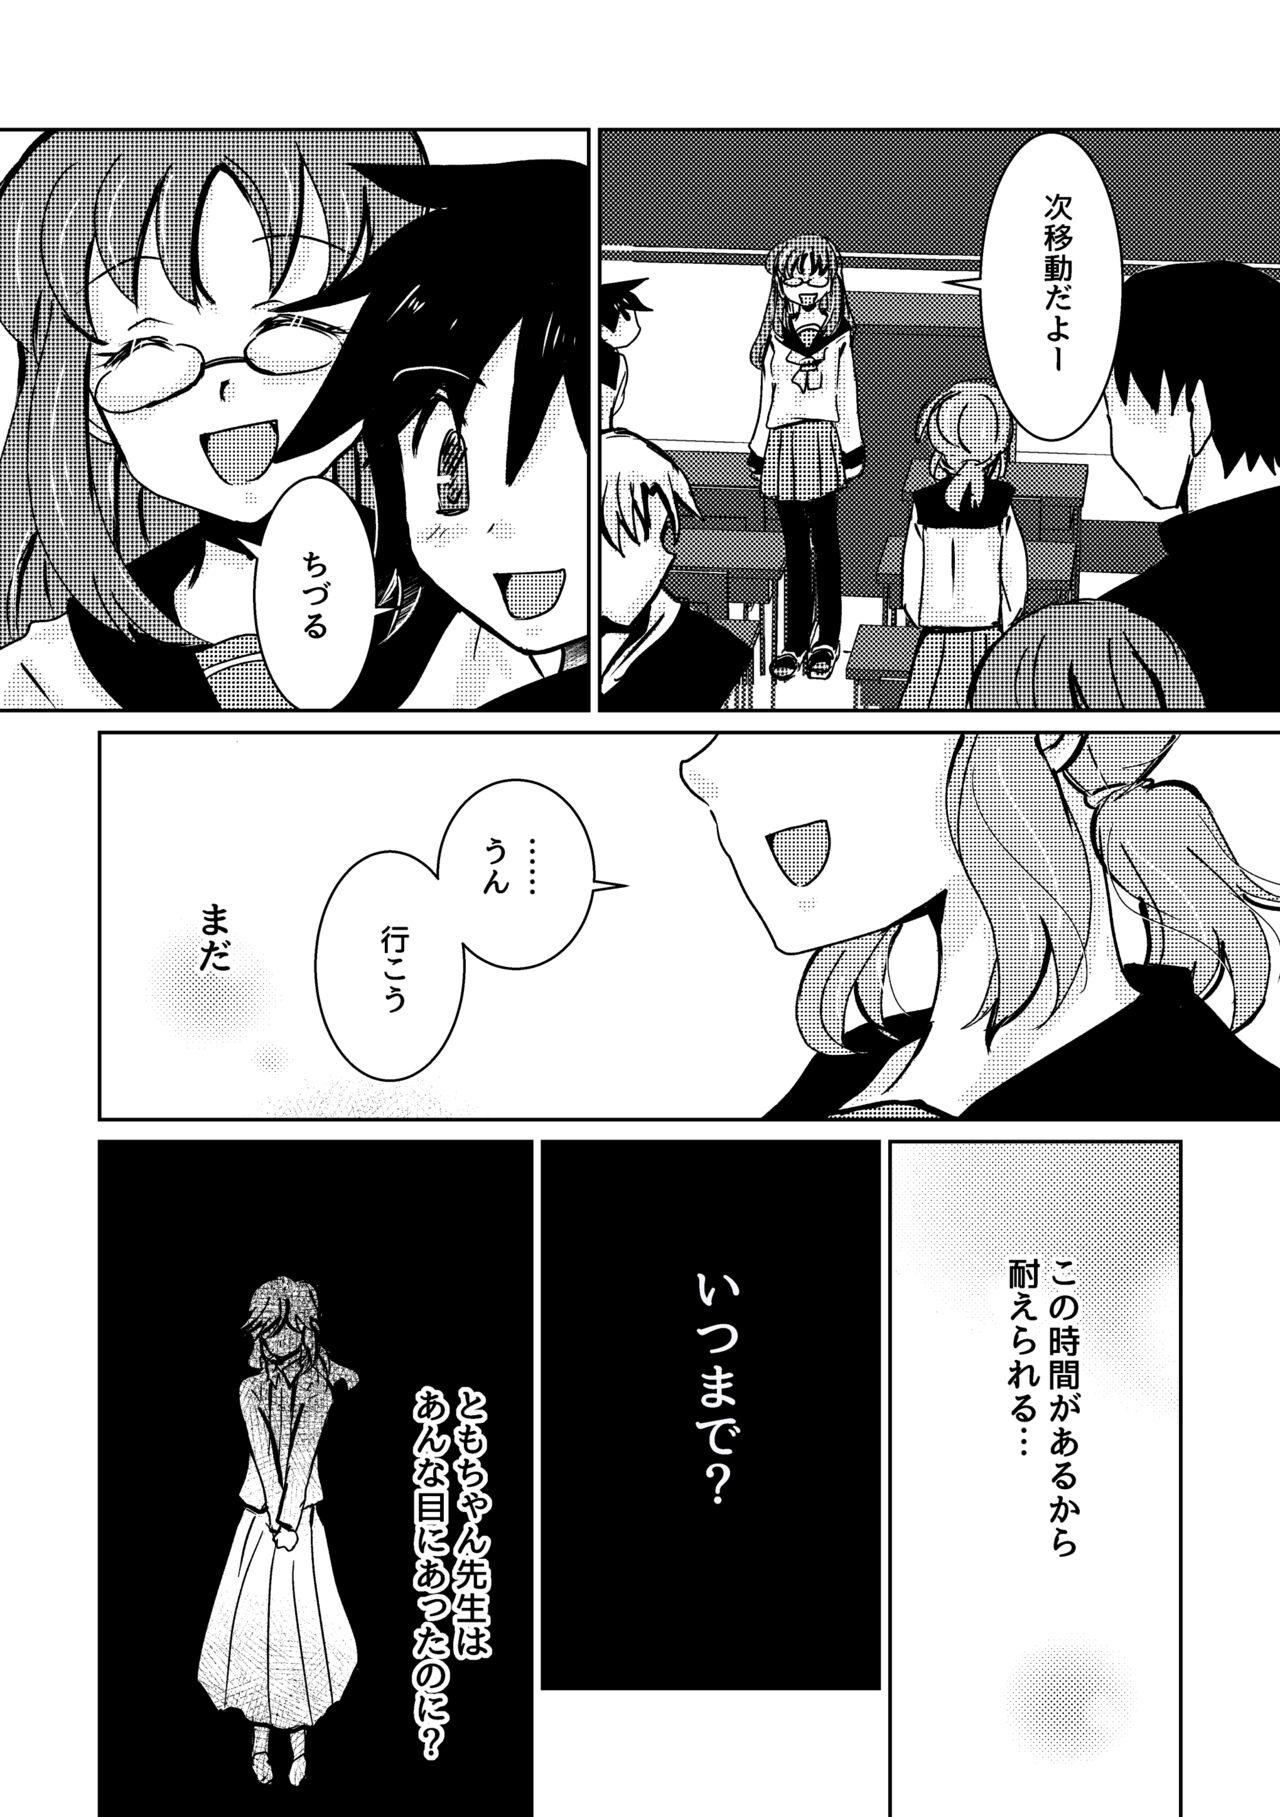 Trannies Kareya Yoru no Hanaka Episode 3 Pendeja - Page 8